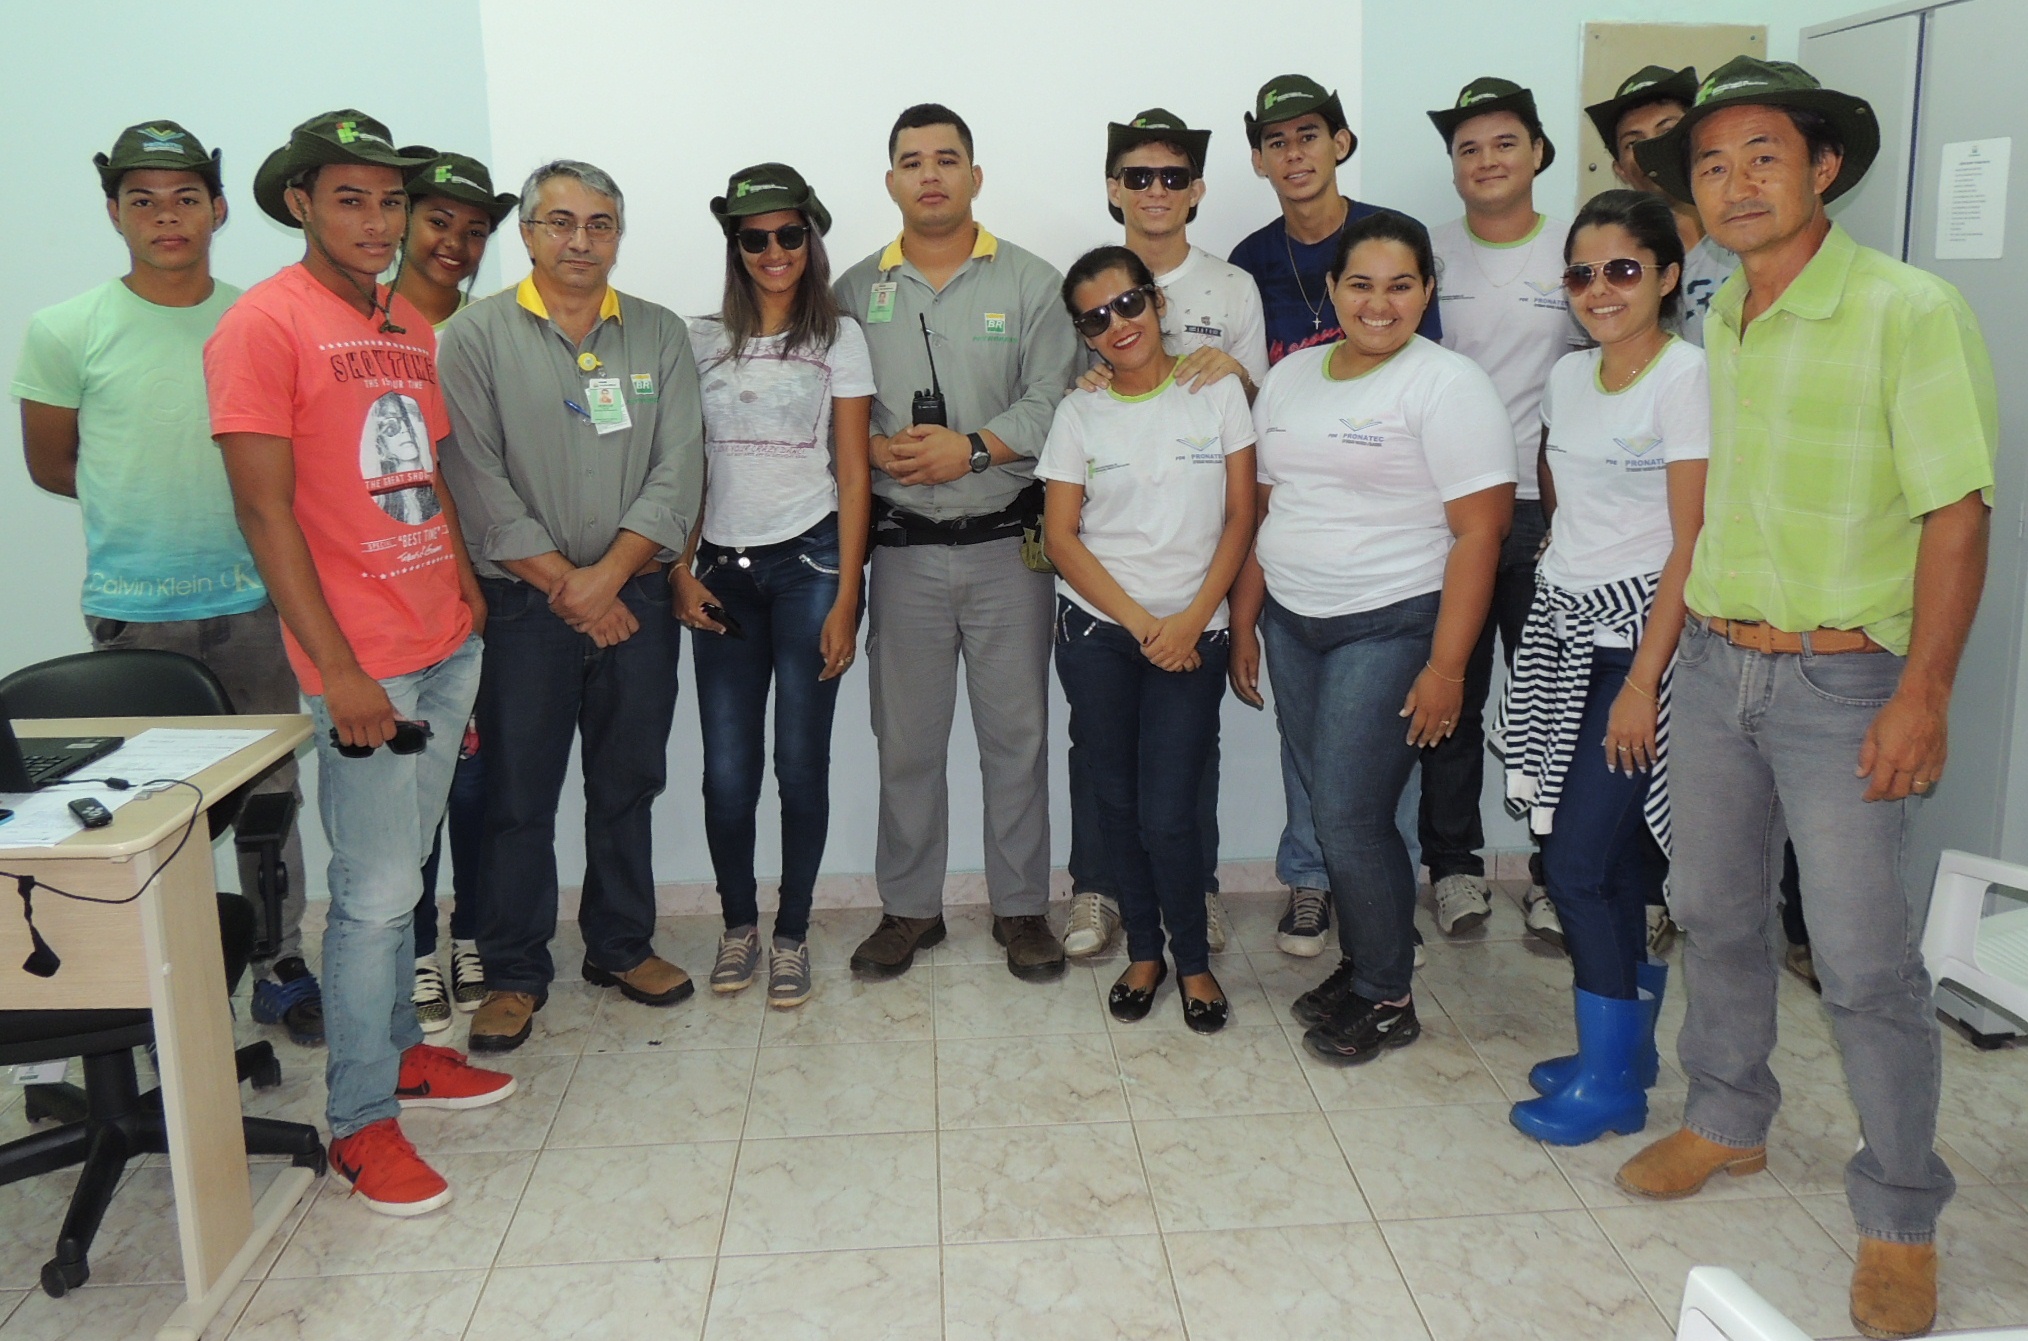 Visita Técnica a base da Petrobras  em Caracaraí, dos alunos do Pronatec do curso de dendêcultura de Rorainópolis. . 